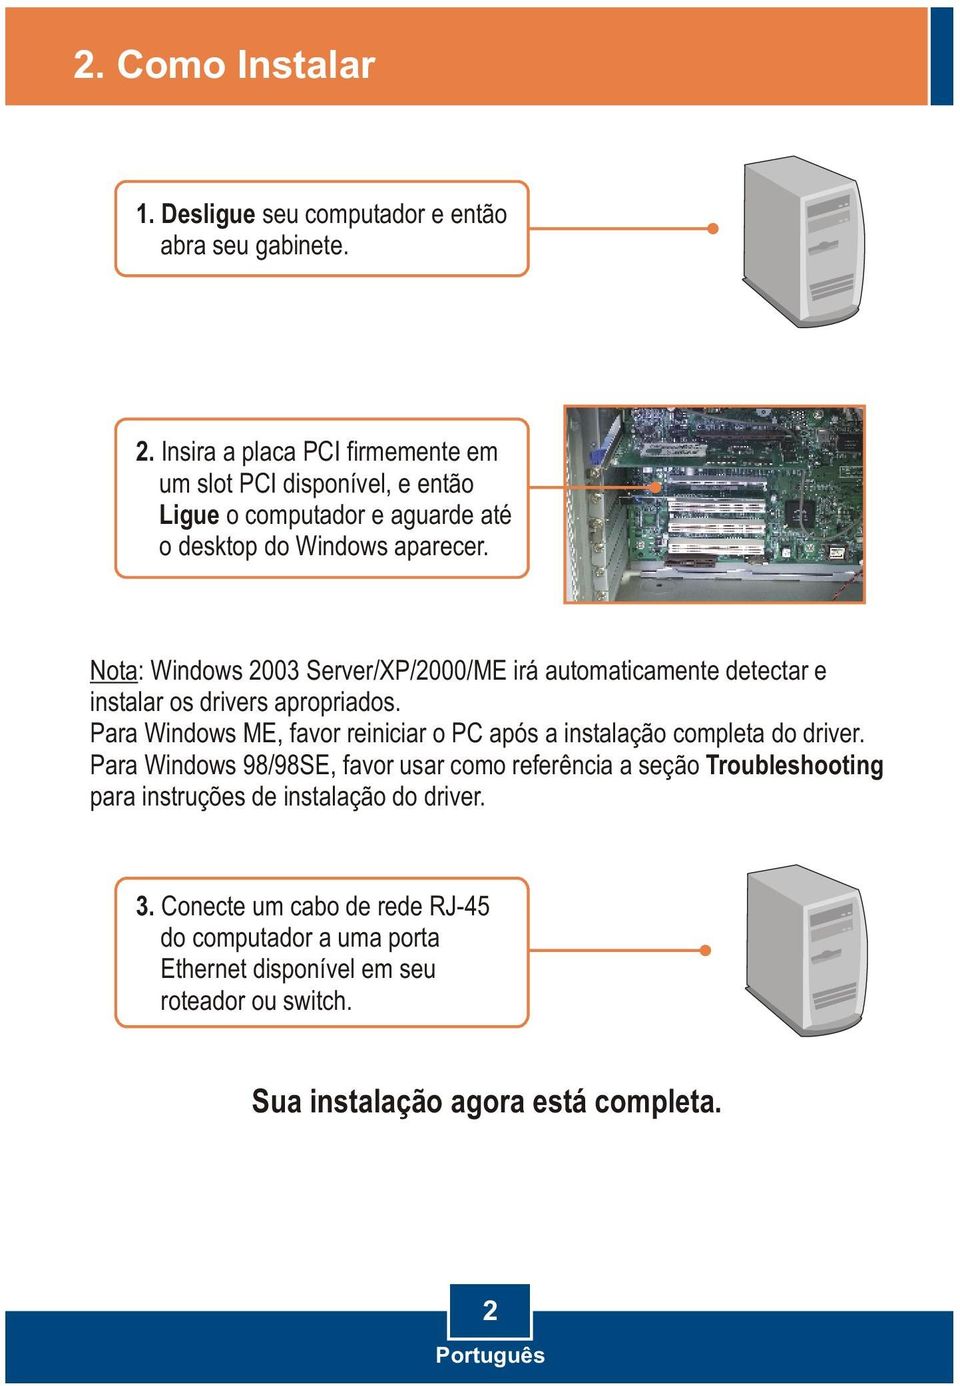 Nota: Windows 2003 Server/XP/2000/ME irá automaticamente detectar e instalar os drivers apropriados.